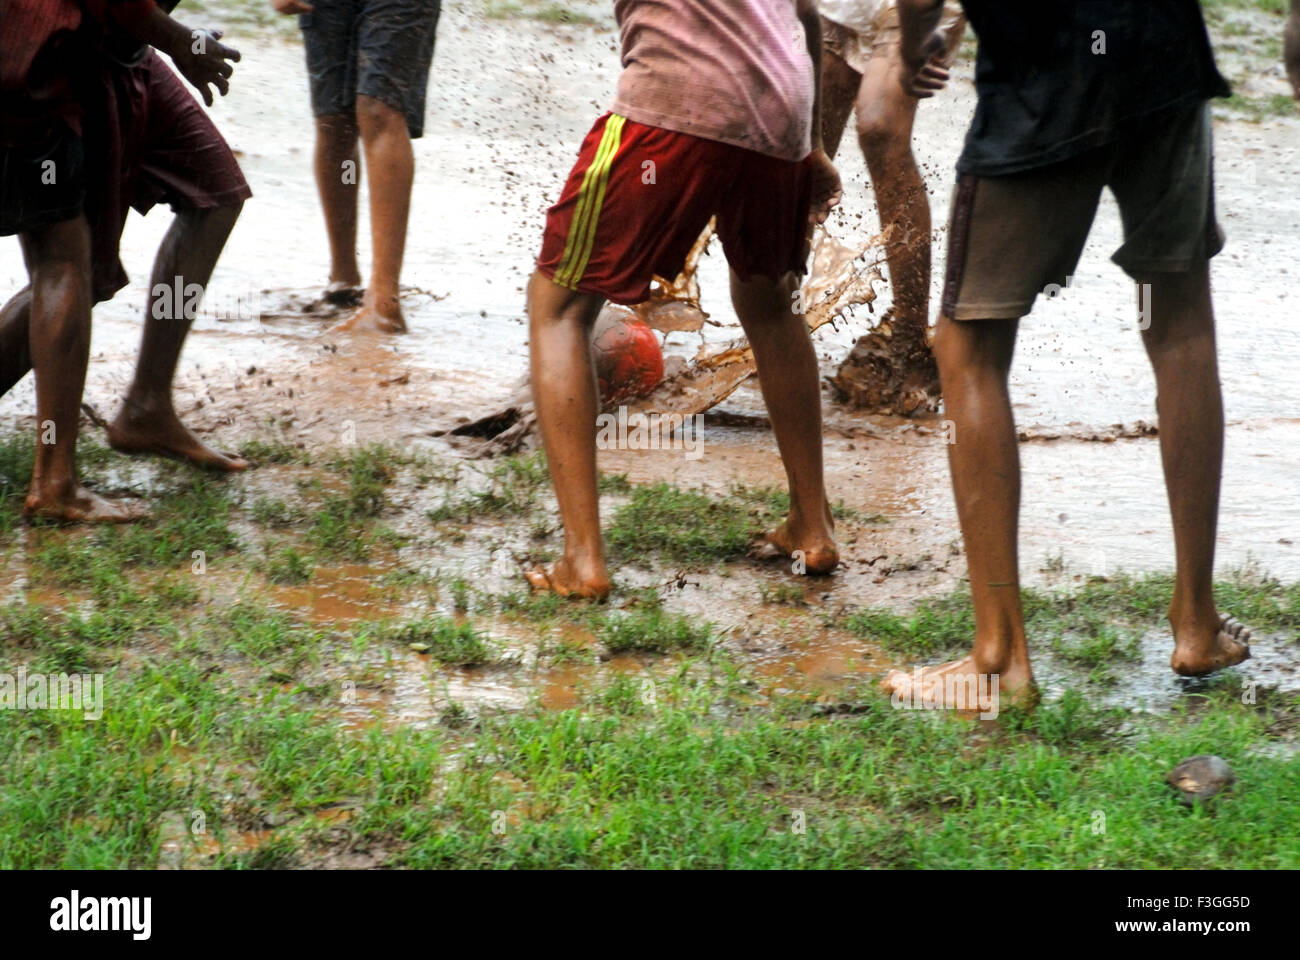 Les Indiens de l'Asie du Sud ; les garçons jouant ; appréciant avec foot ball pendant la mousson ; Inde PAS DE MR Banque D'Images